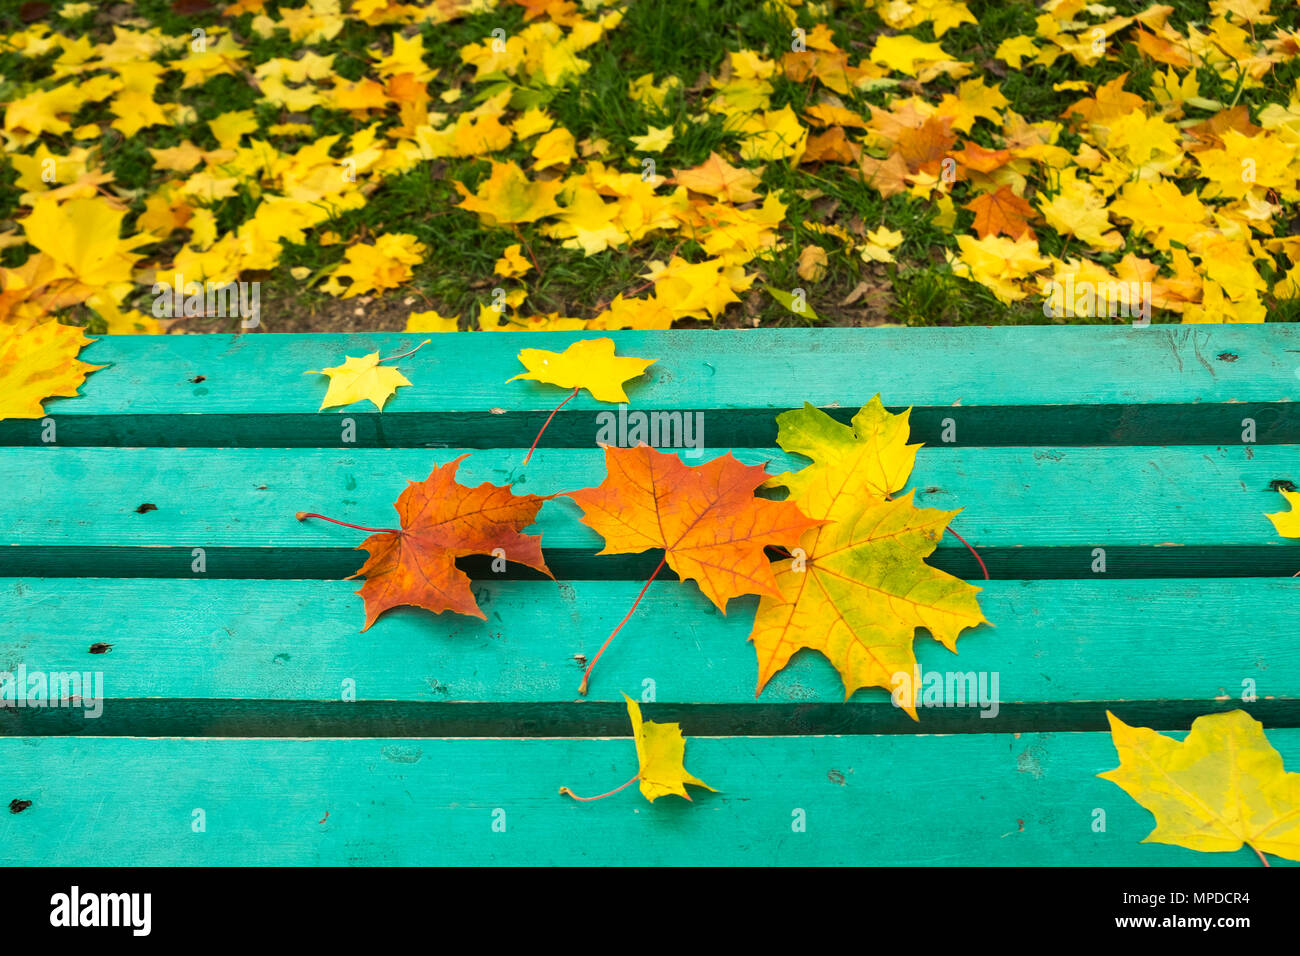 Feuilles d'érable rouge et jaune sur le vieux banc en bois peint turquoise en parc public. Journée d'automne. Humeur d'automne. Copier l'espace. Banque D'Images